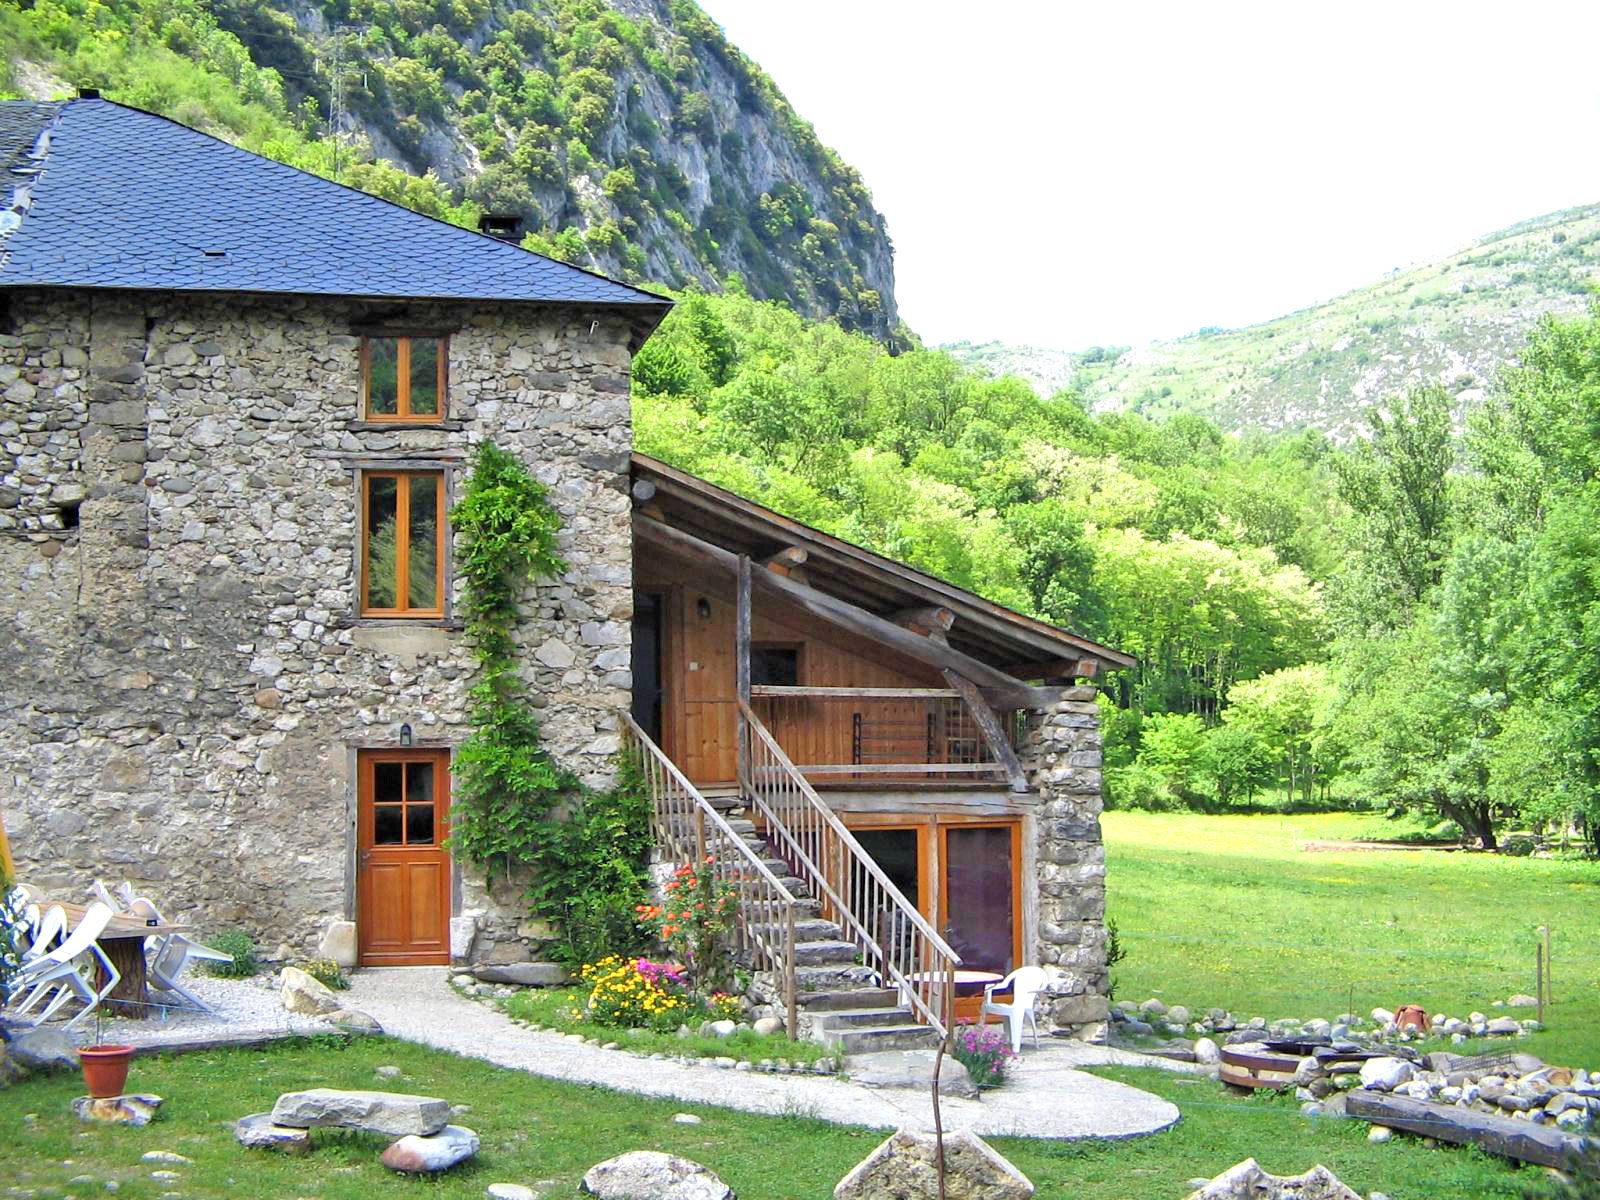 Location gite rural Ariège